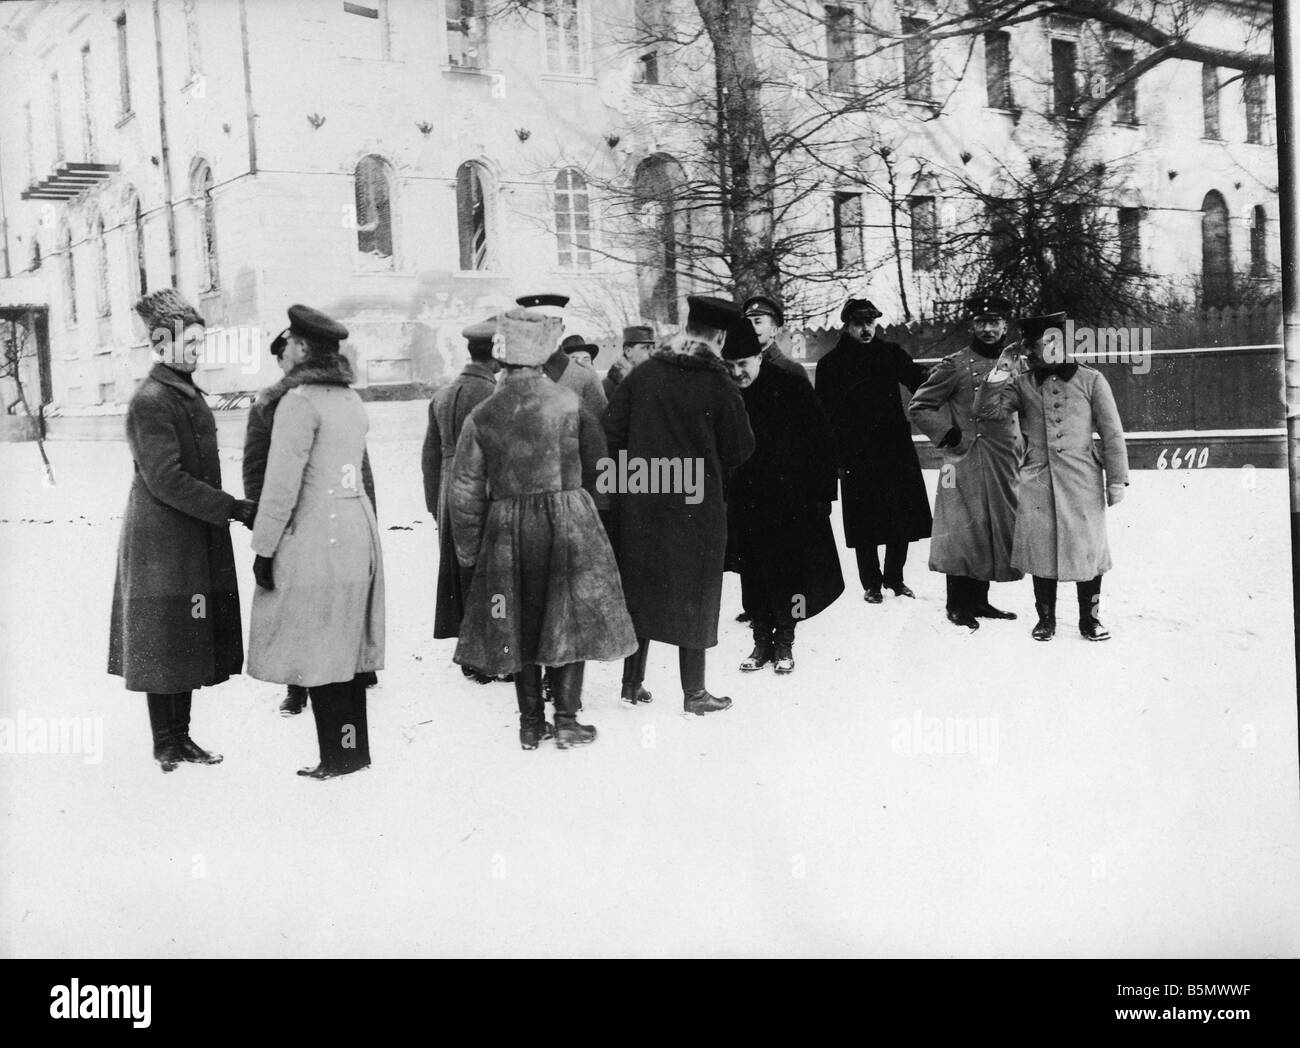 9RD 1918 2 9 A1 1 delegazione ucraina una Ger ufficiali Guerra Mondiale 1 1914 18 negoziato di pace a Brest Litowsk e pace separata Foto Stock